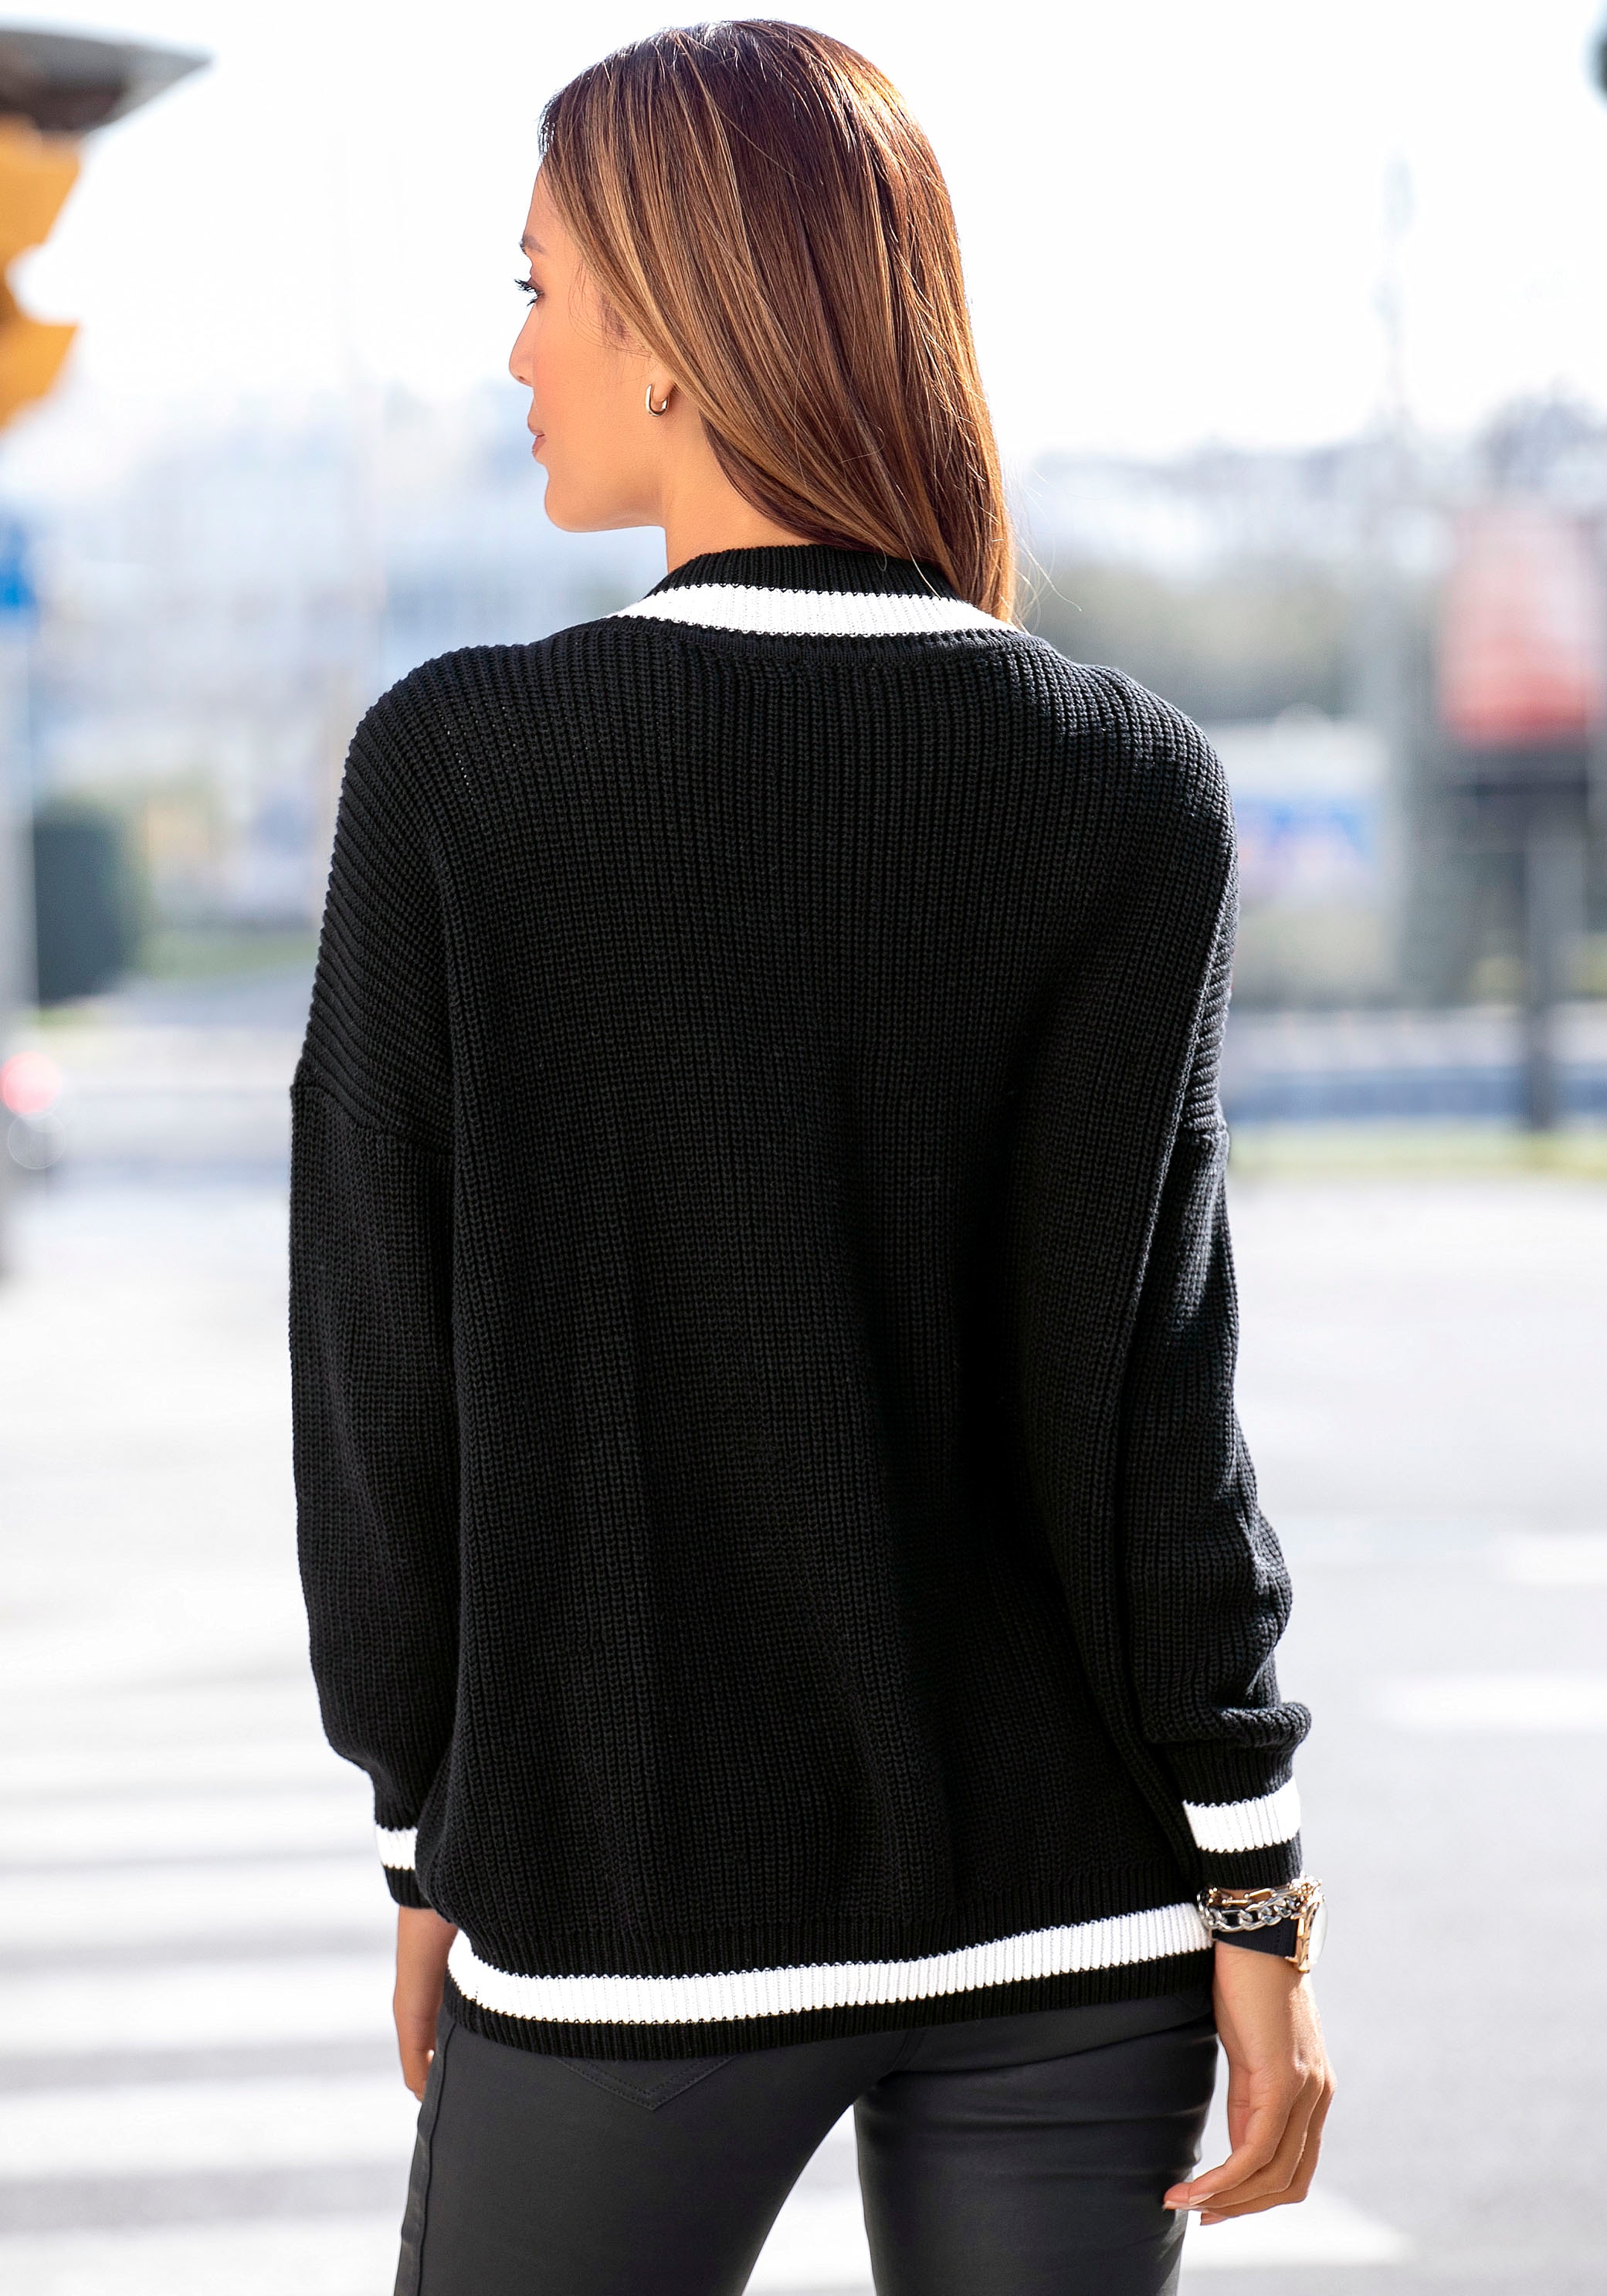 LASCANA V-Ausschnitt-Pullover, mit Streifen-Details, weicher Strickpullover, casual-chic